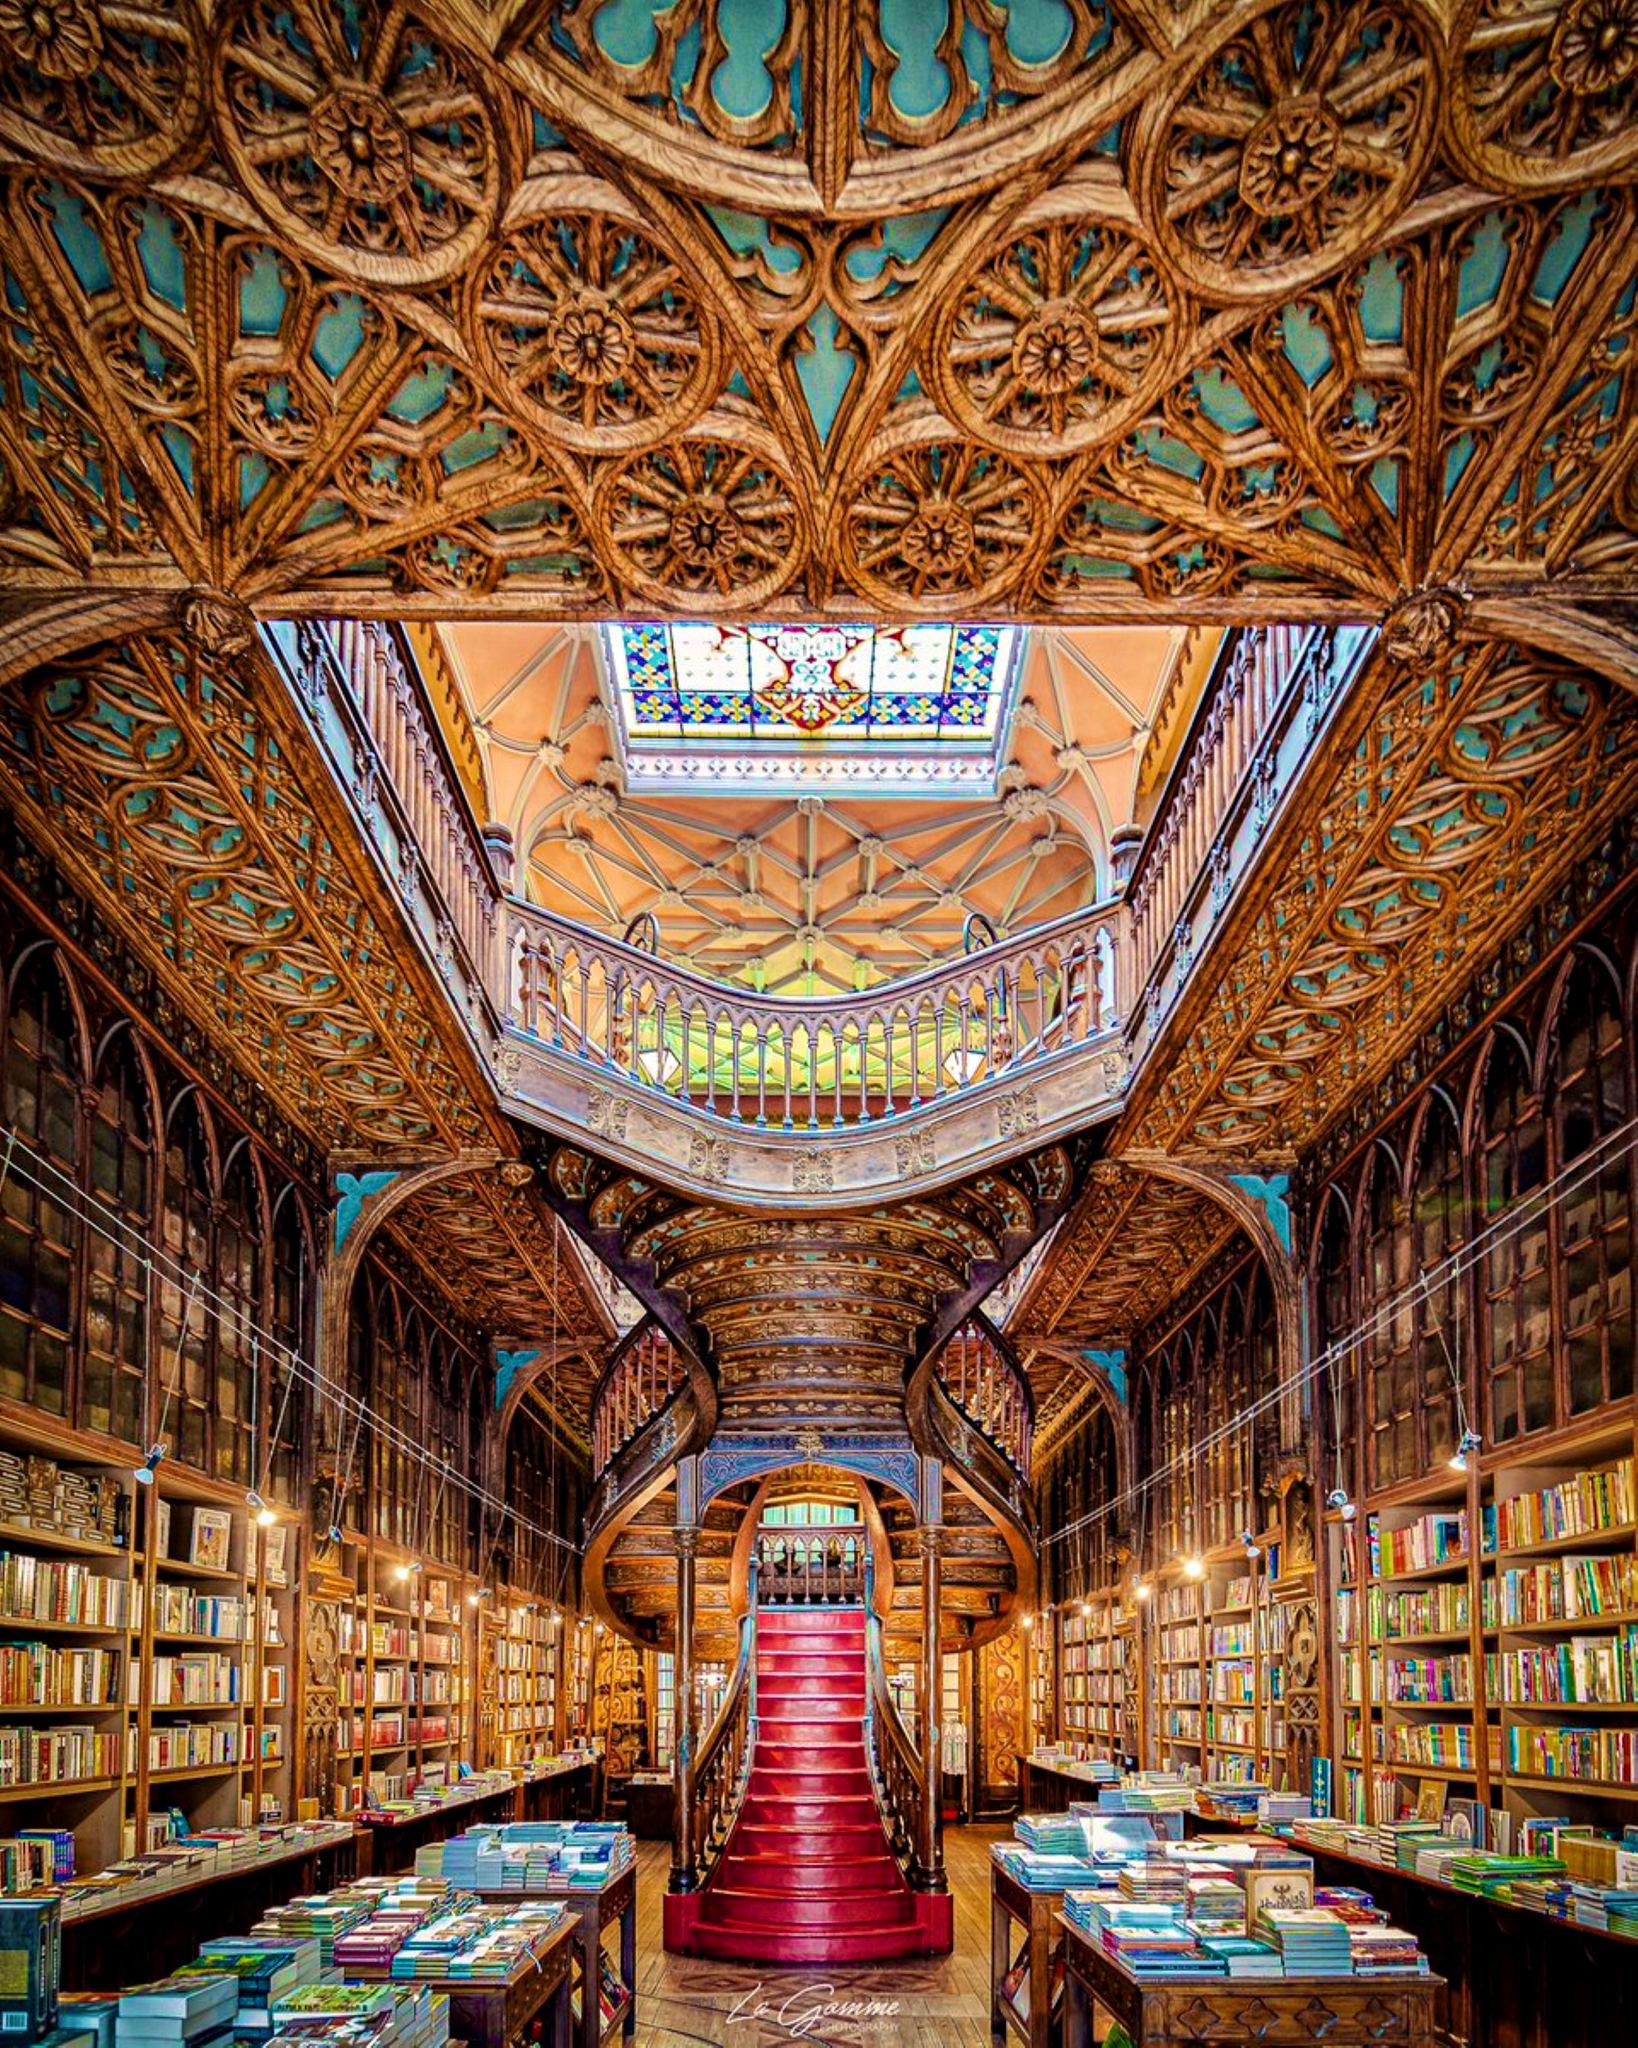 مكتبة ليفاريا ليلّو في بورتو البرتغالية